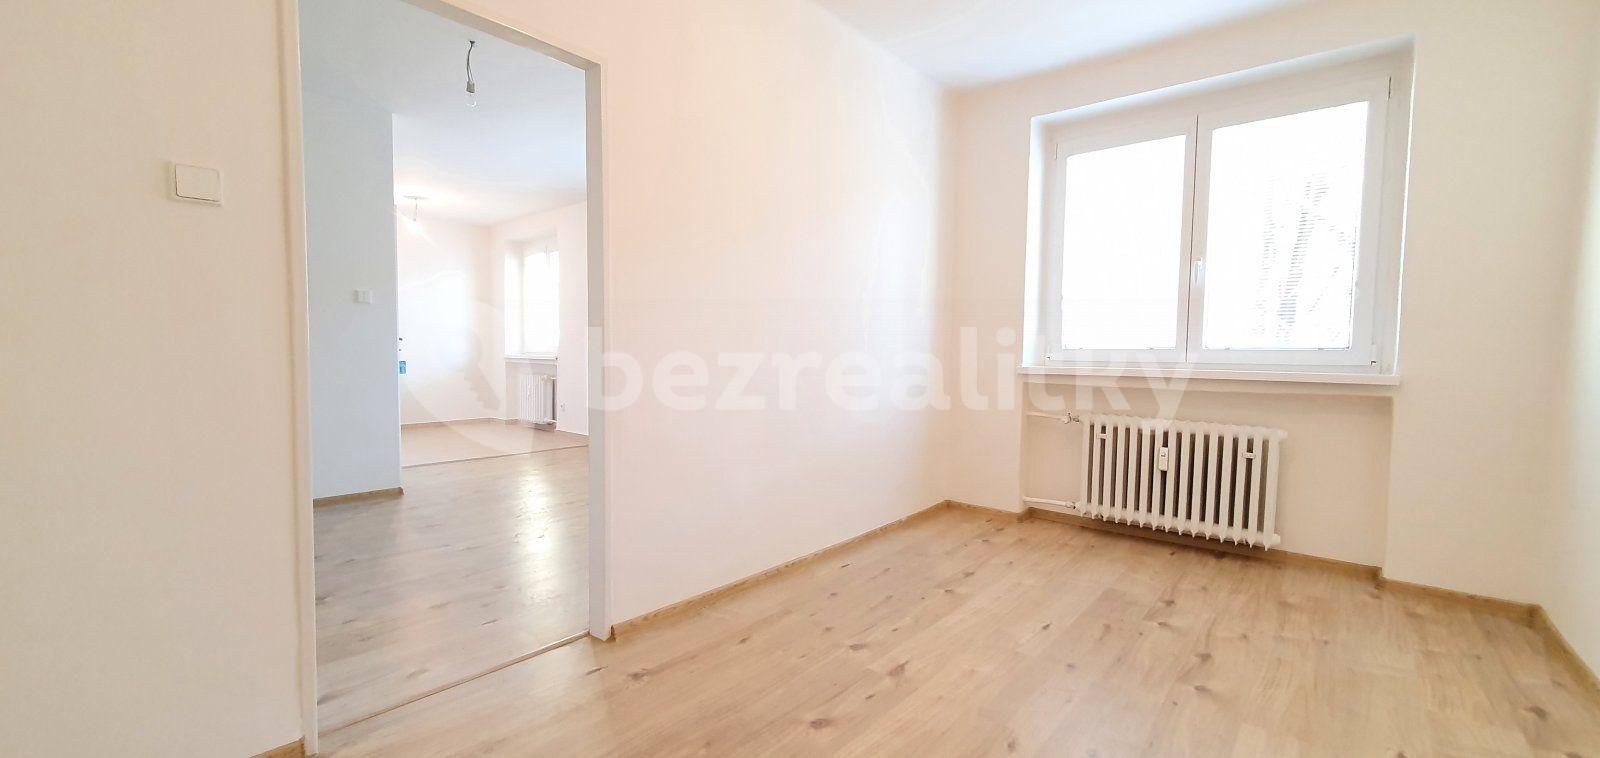 1 bedroom with open-plan kitchen flat to rent, 37 m², Klimšova, Havířov, Moravskoslezský Region